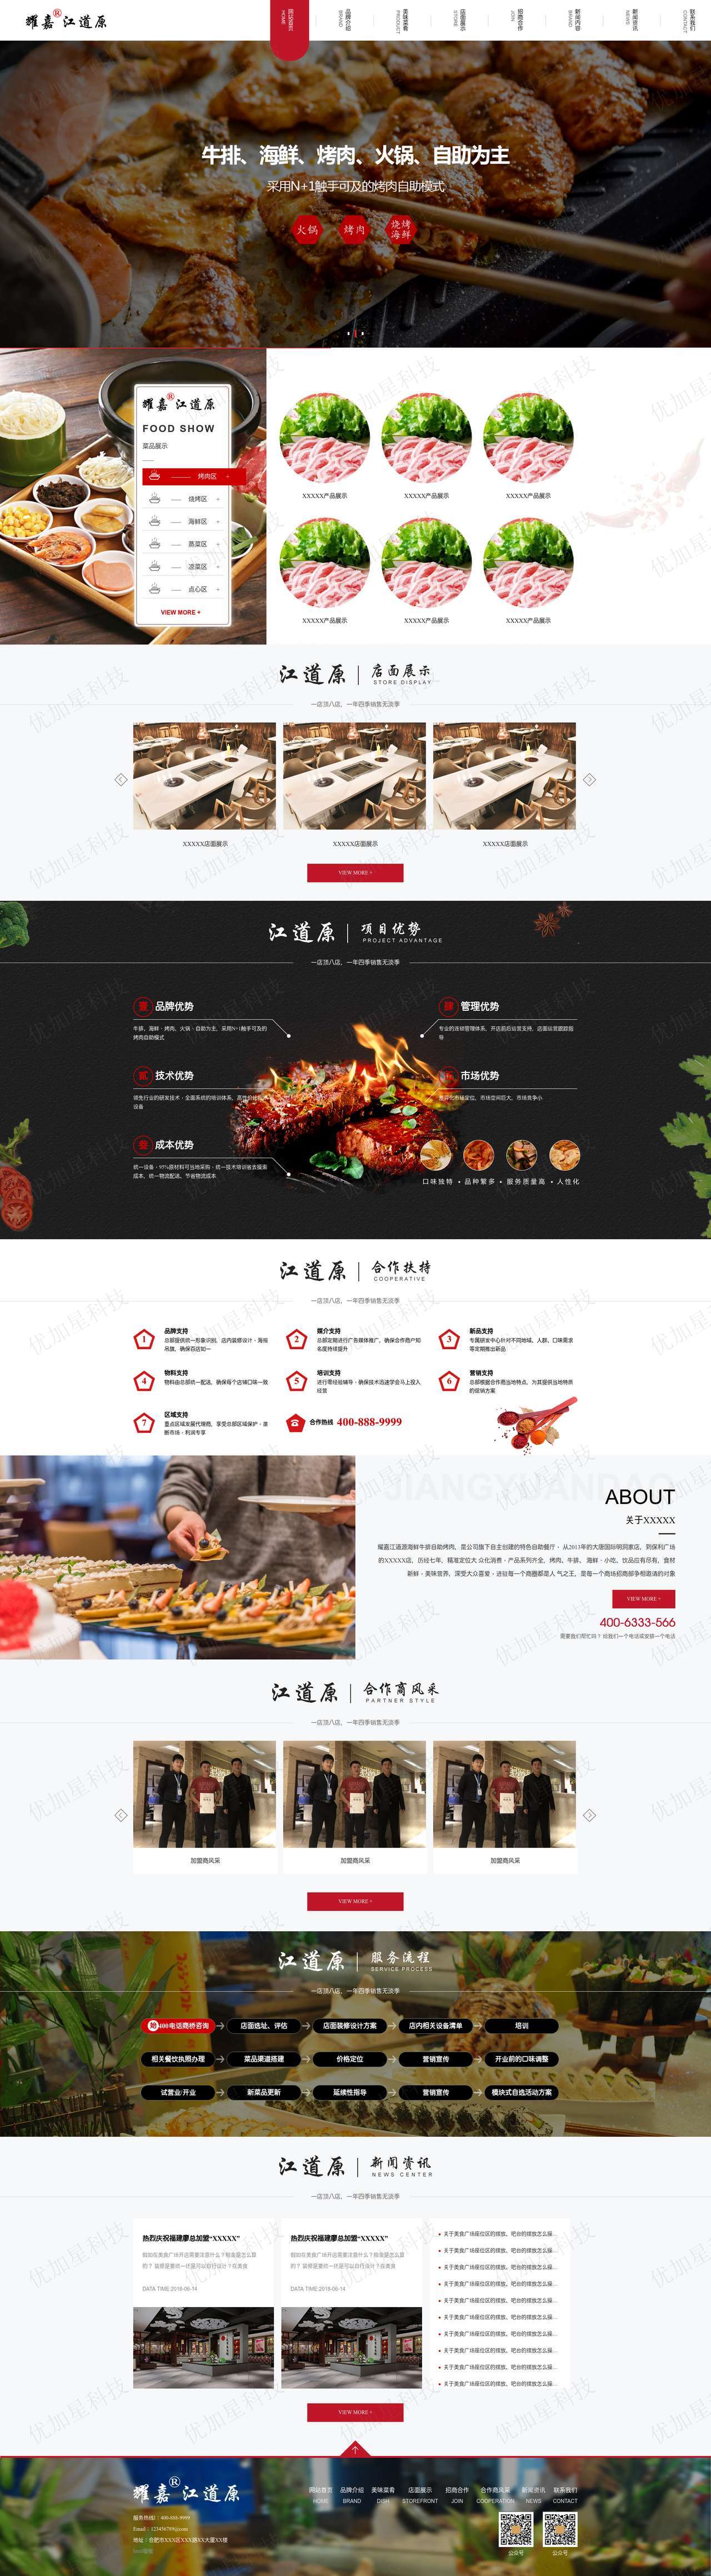 烤肉自助火锅美食网站html模板下载_优加星网络科技